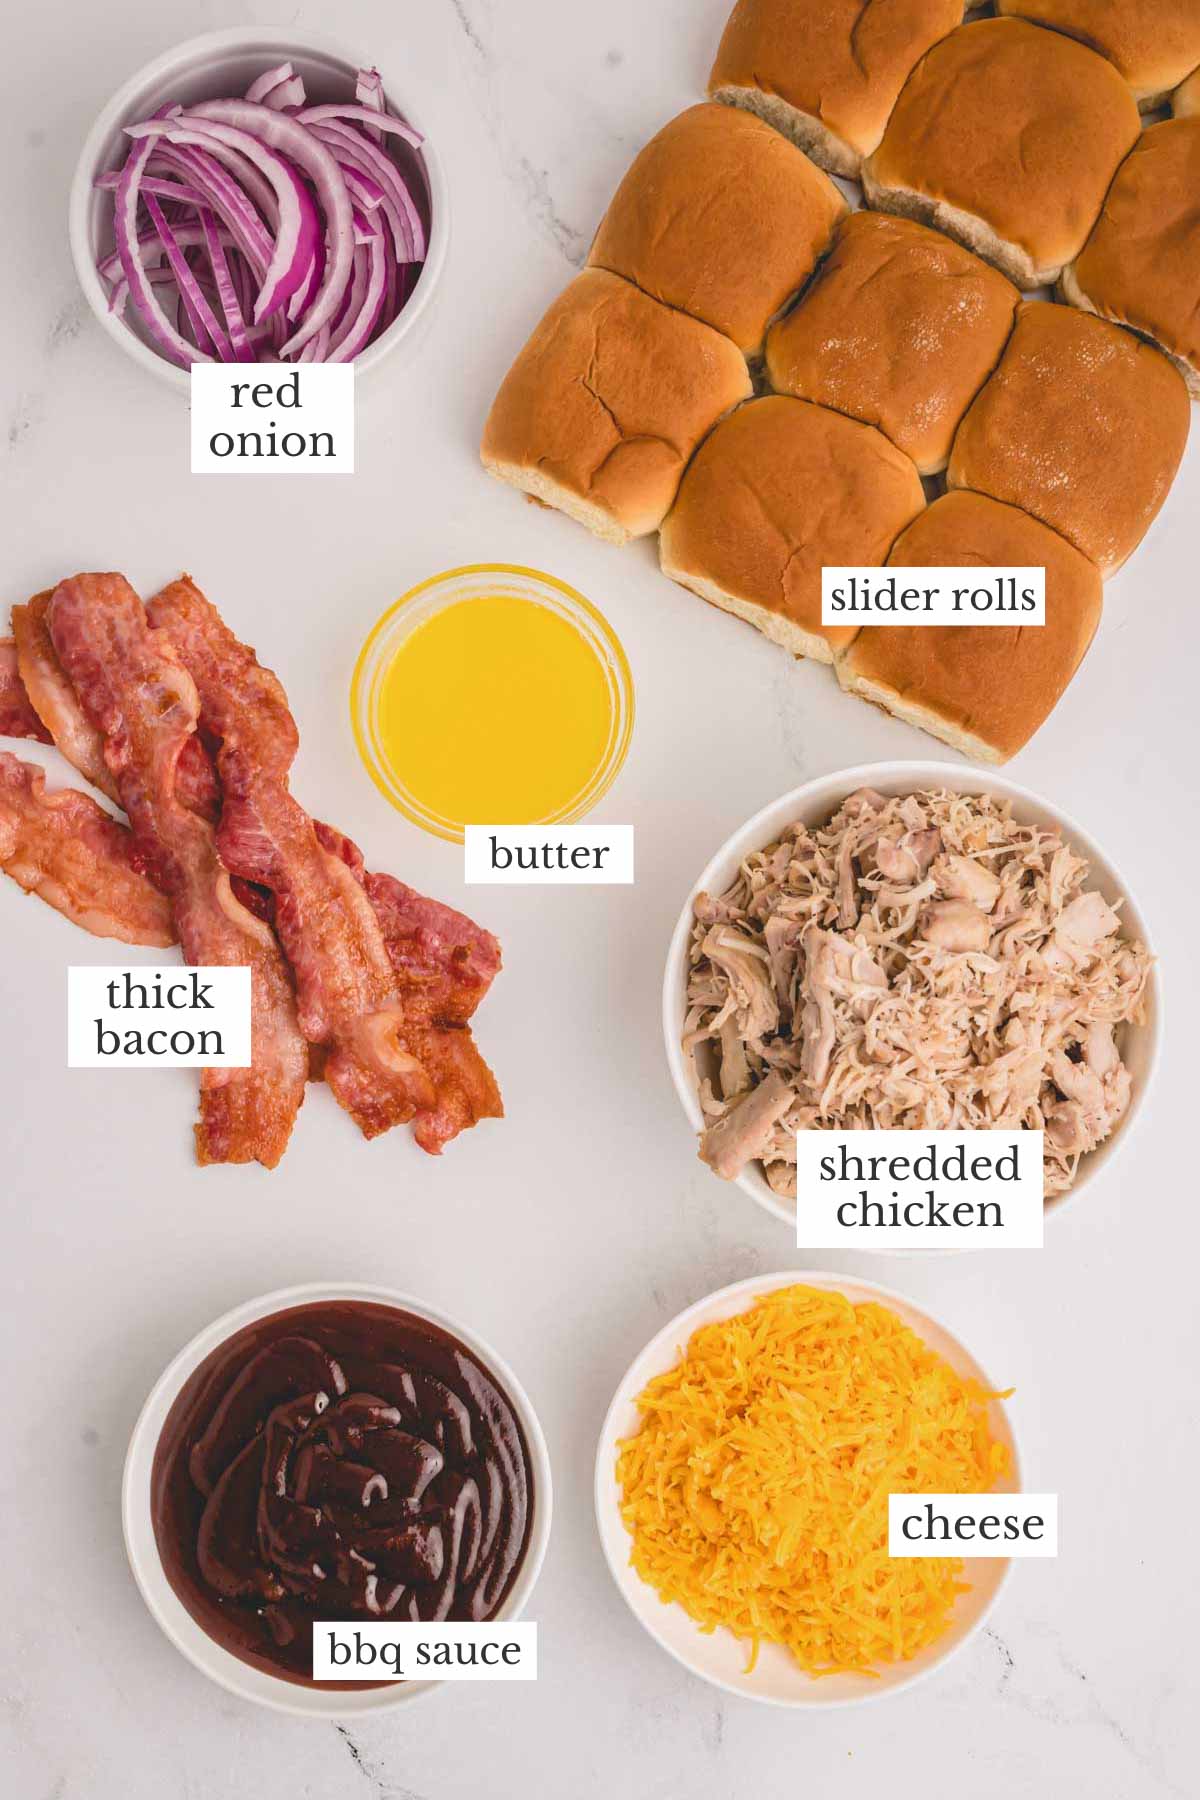 BBQ Chicken Sliders ingredients.